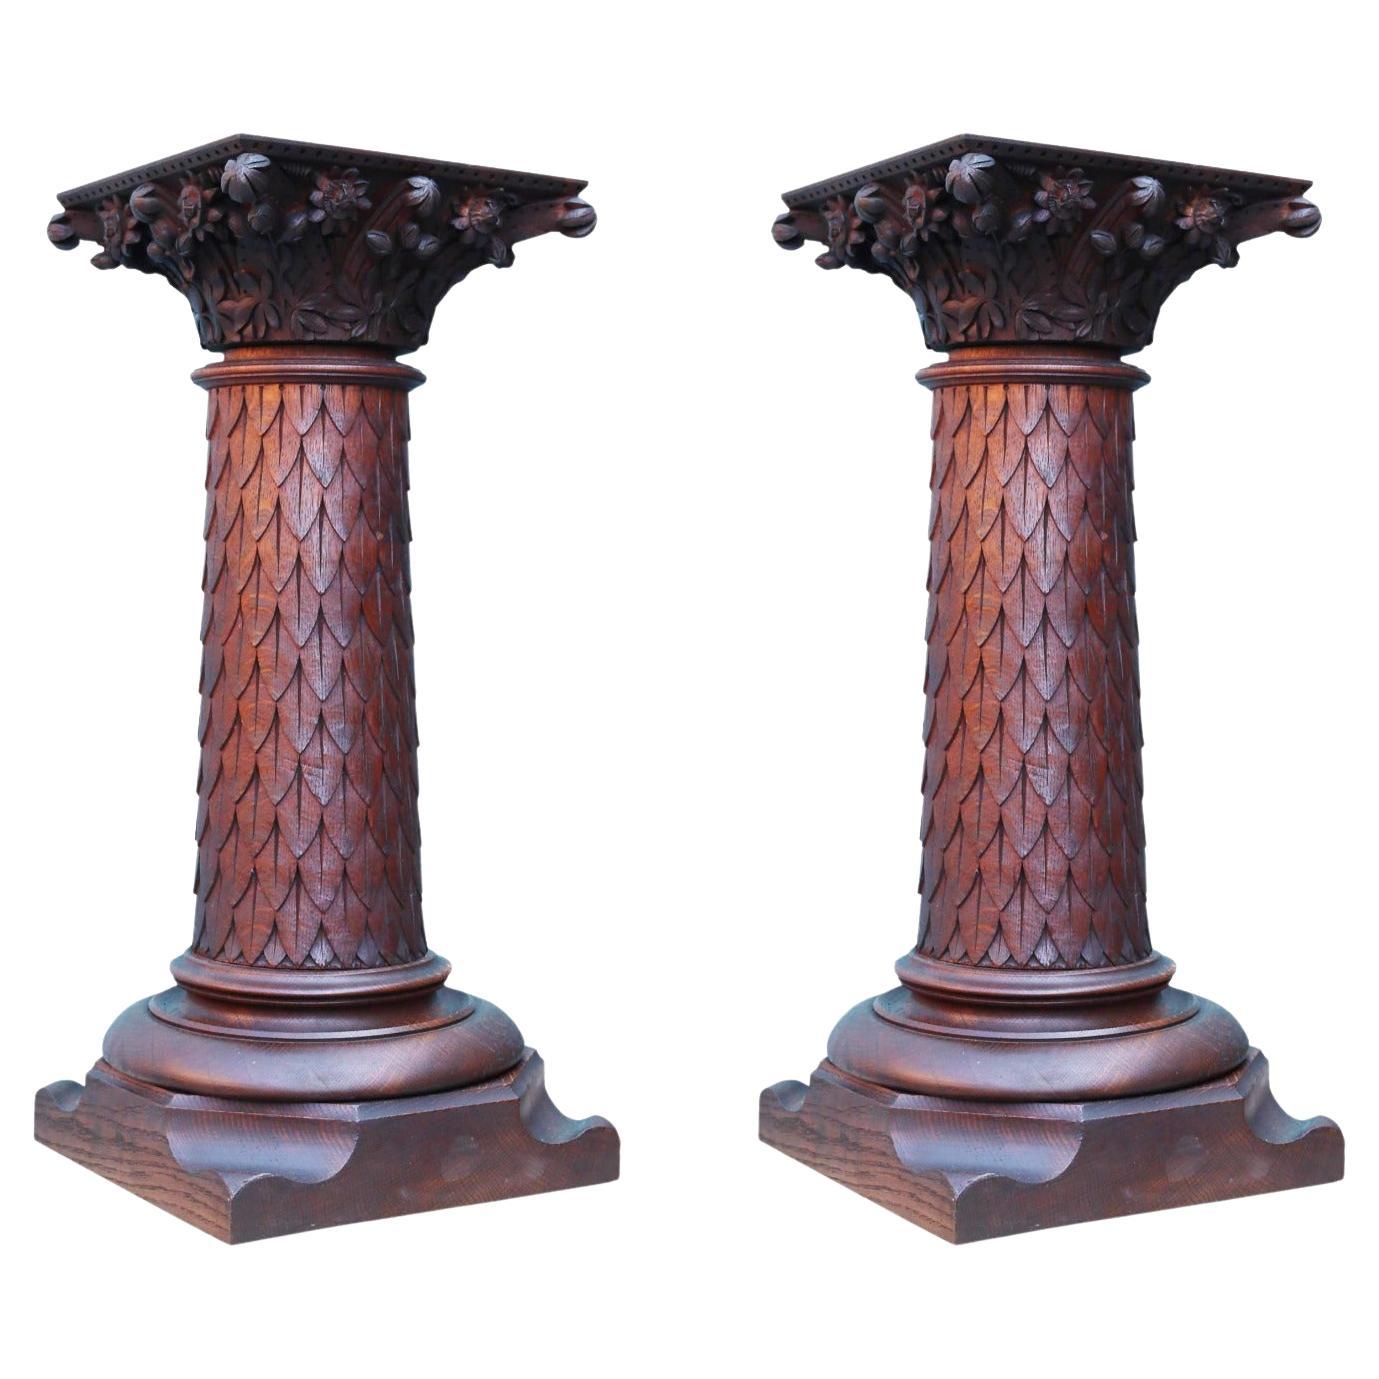 Zwei geschnitzte OAK Column Pedestals